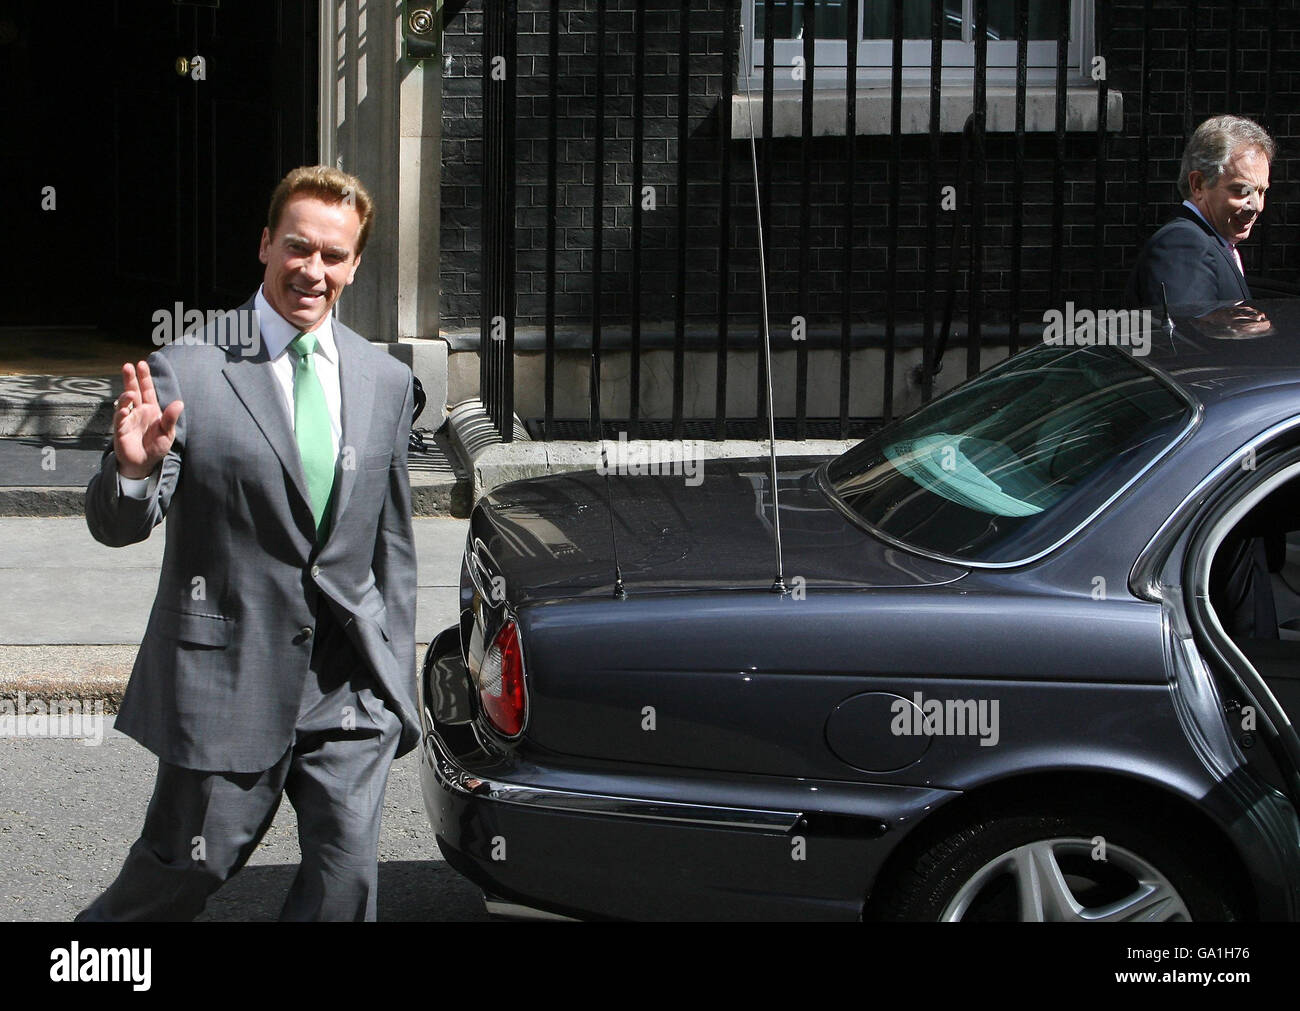 Le Premier ministre Tony Blair avec le gouverneur de la Californie Arnold Schwarzenegger (à gauche) car ils quittent le 10 Downing Street dans le centre de Londres. Banque D'Images